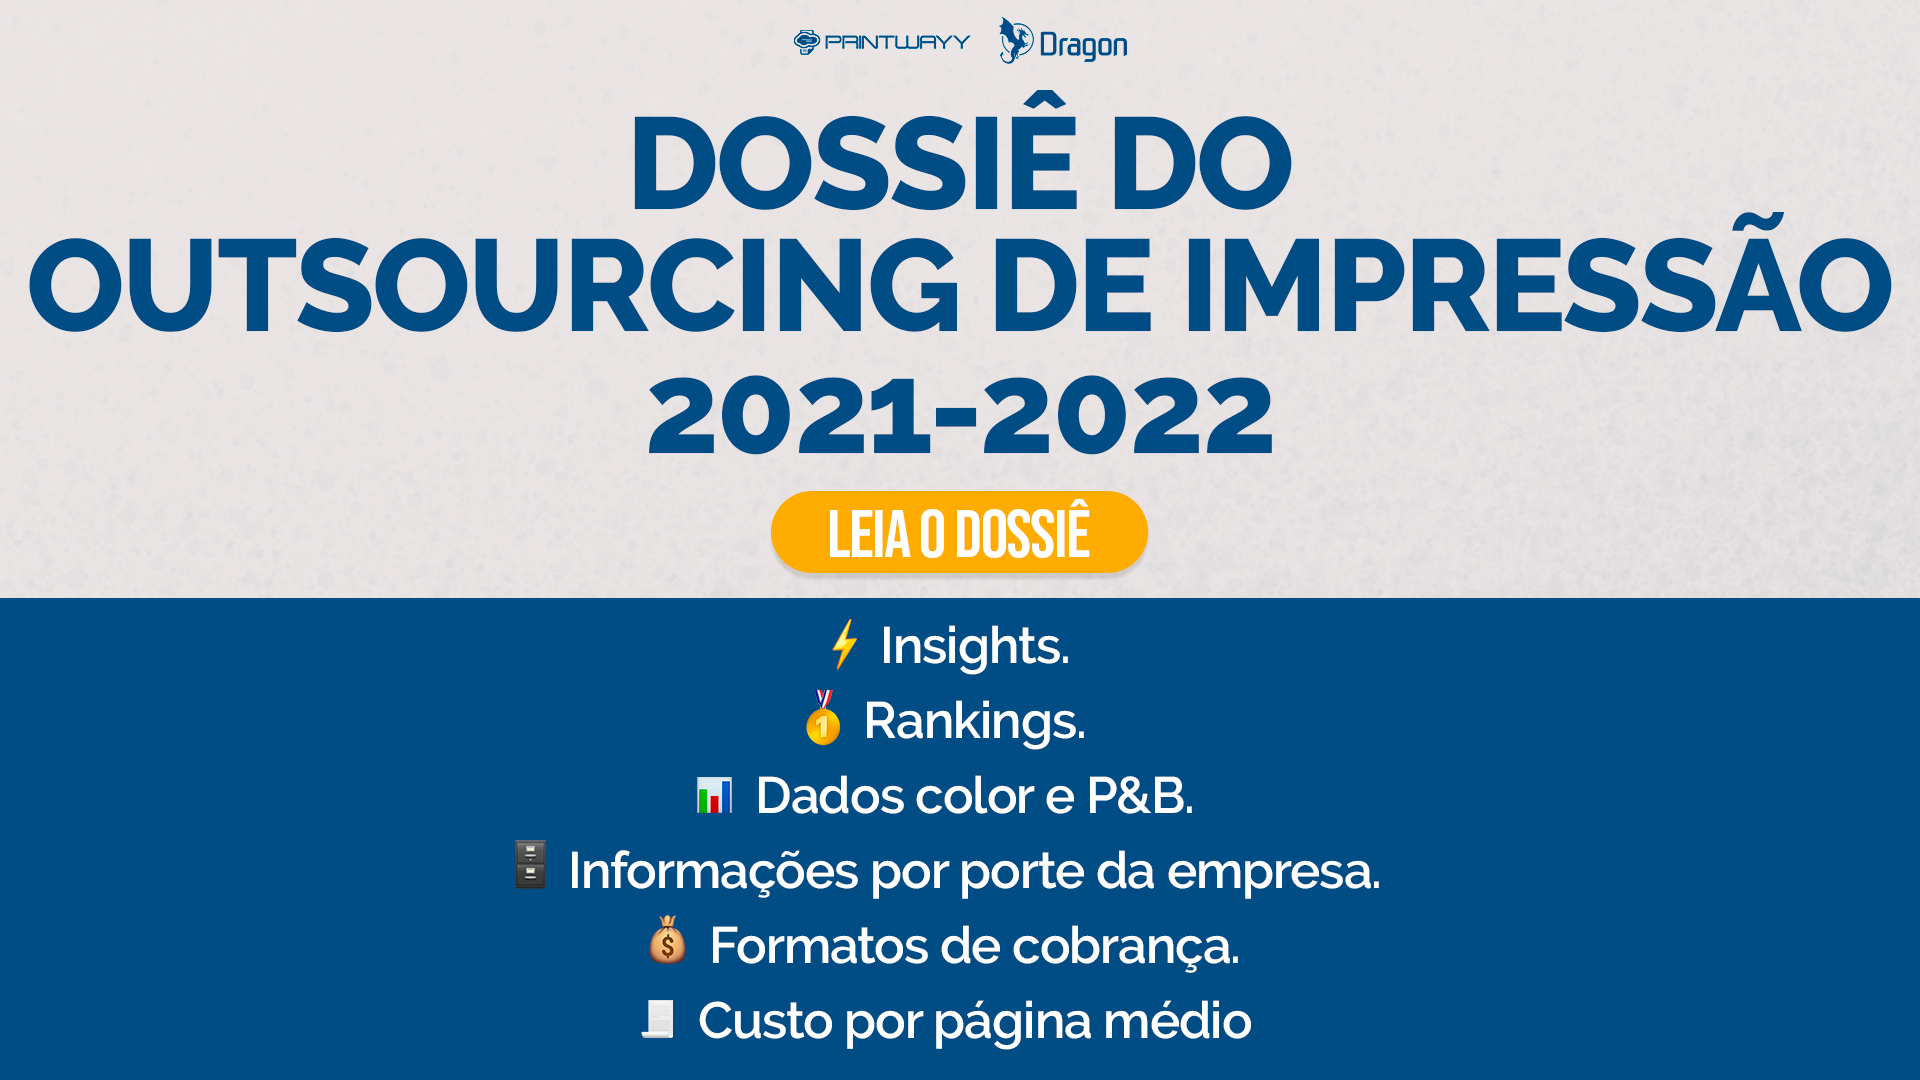 Convite para acessar o Dossiê do Outsourcing de Impressão 2021-2022.